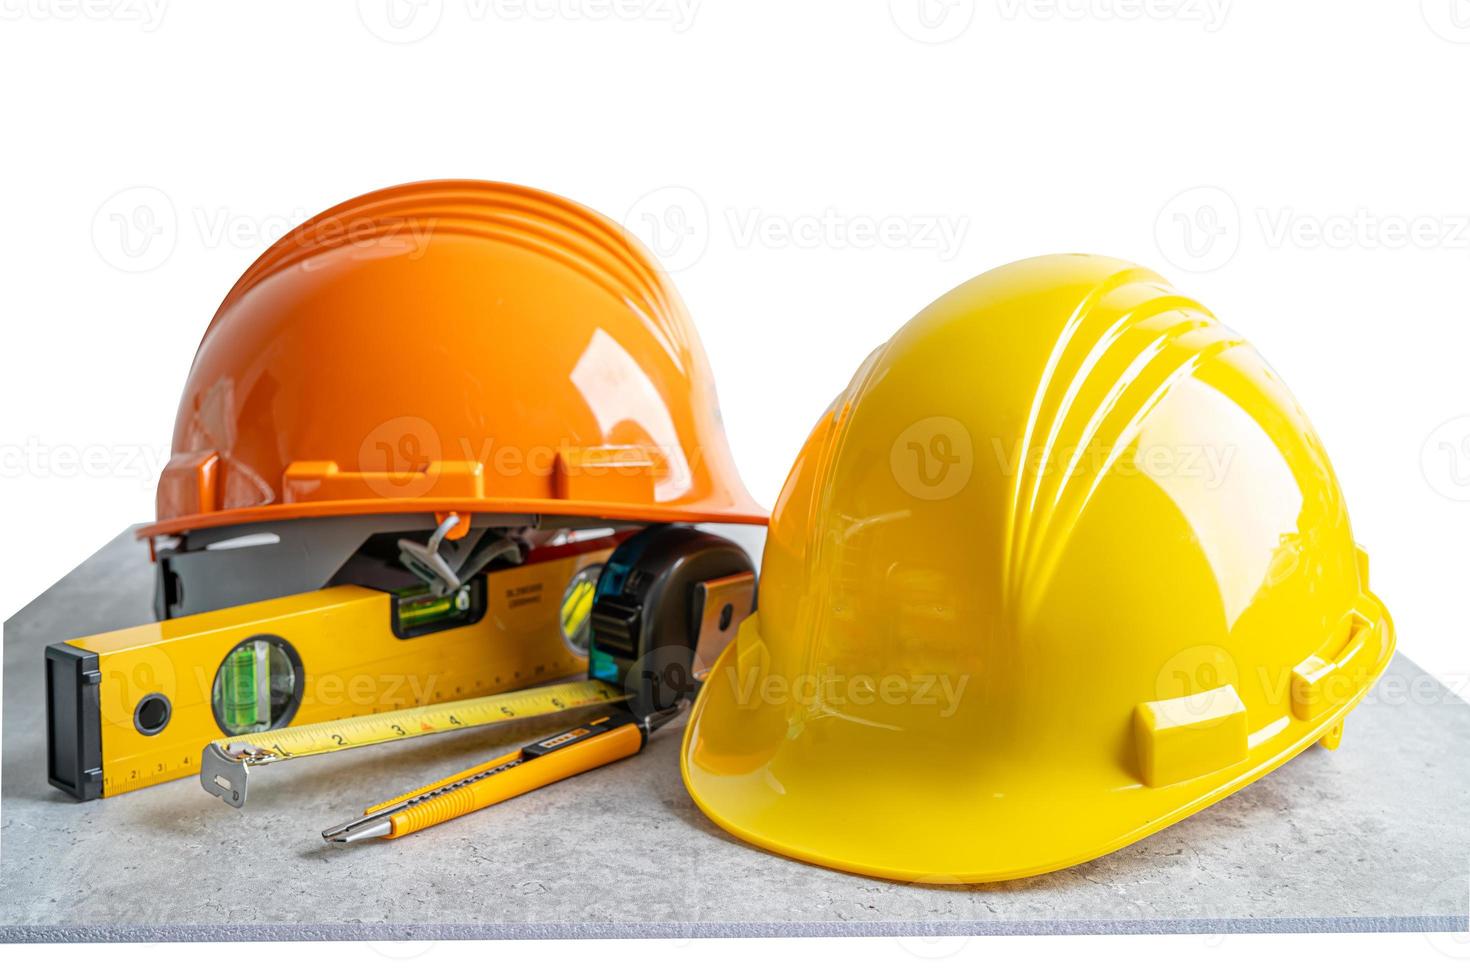 säkerhet första hård hjälm hatt och ingenjör verktyg på vit bakgrund, teknisk konstruktion och arkitektur koncept. foto